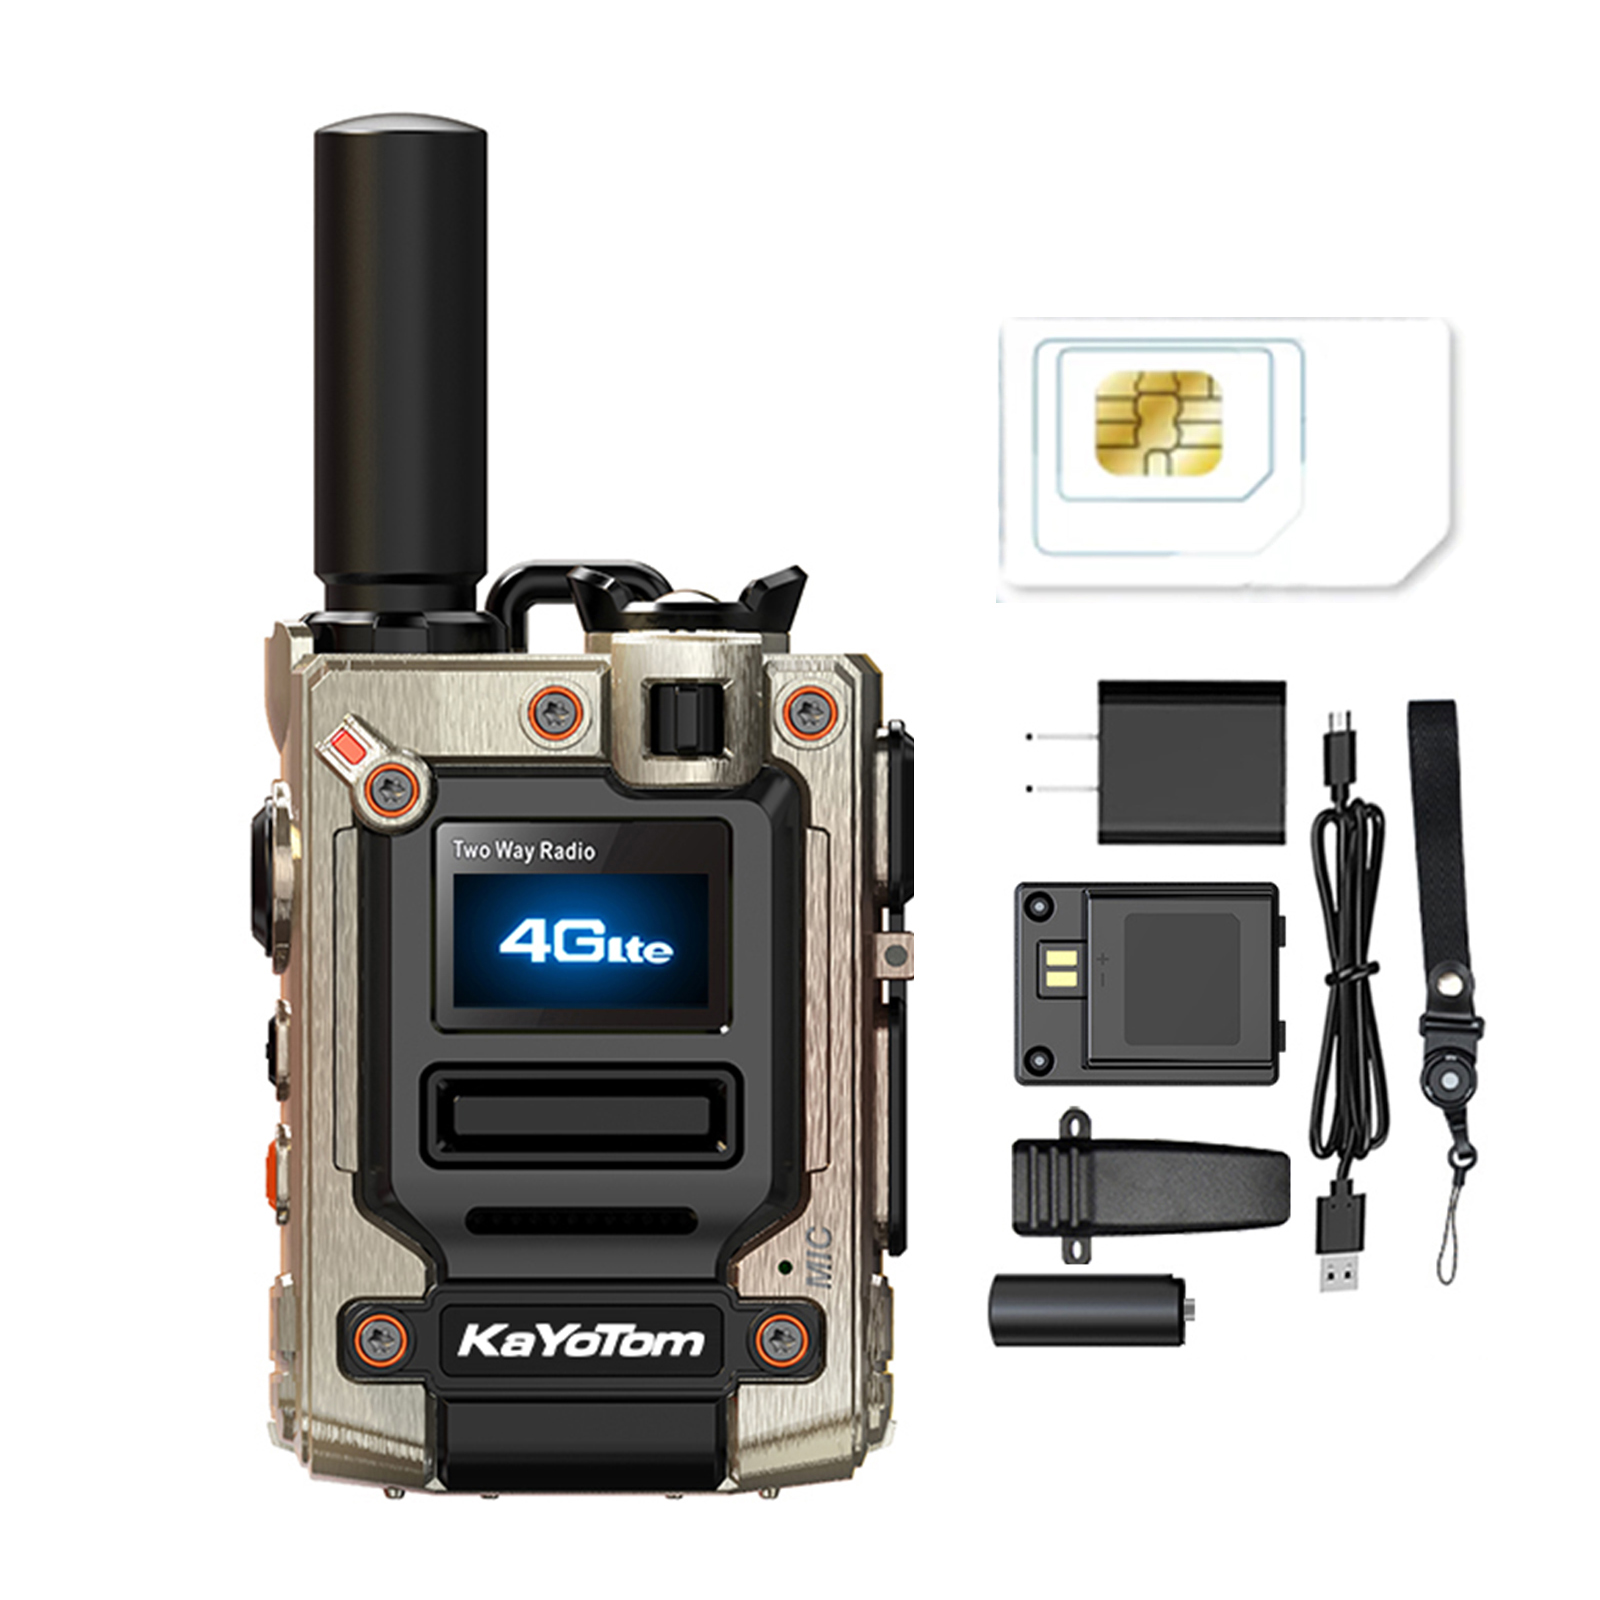 Global walkie Talkie,Kayotom Global walkie talkies Unlimited Range,Two Way Radio,Global walkie-talkies 5000 Mile Range,Walkie Talkies for Family Contact,Hiking Camping (with  SIM Card)-walkie-talkie